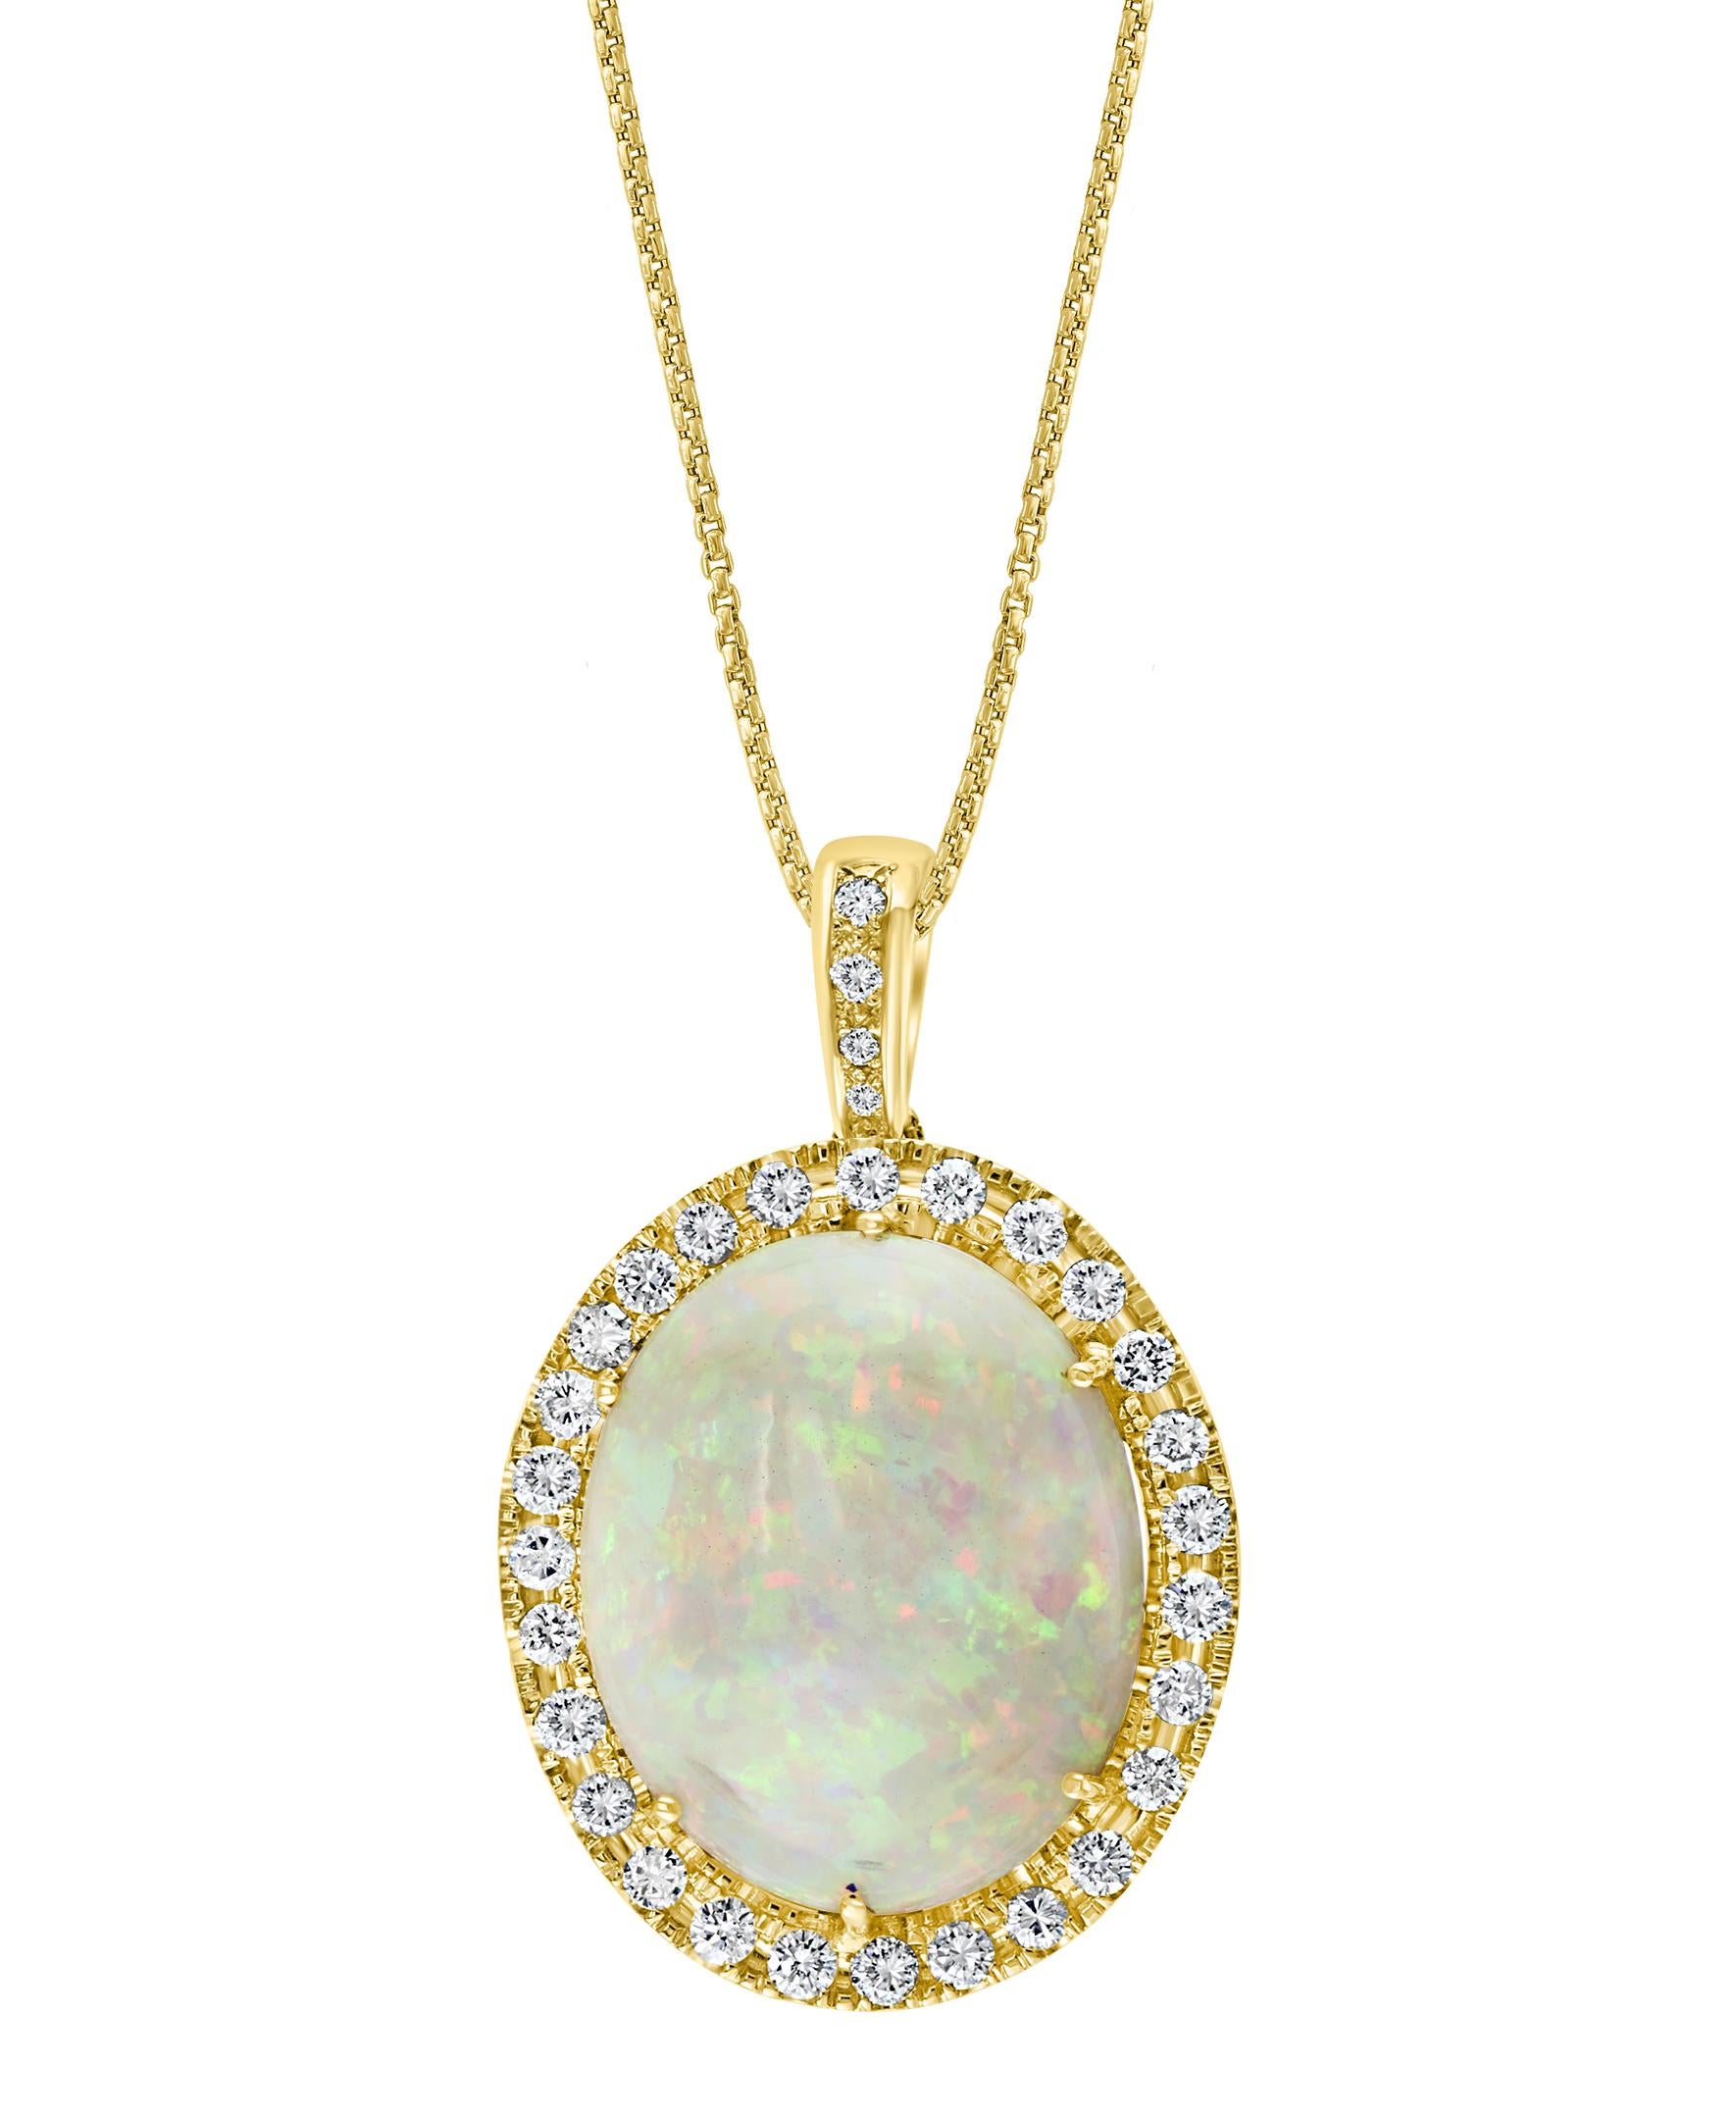 Oval Cut 52 Carat Oval Ethiopian Opal and Diamond Pendant / Necklace 18 Karat Gold Estate